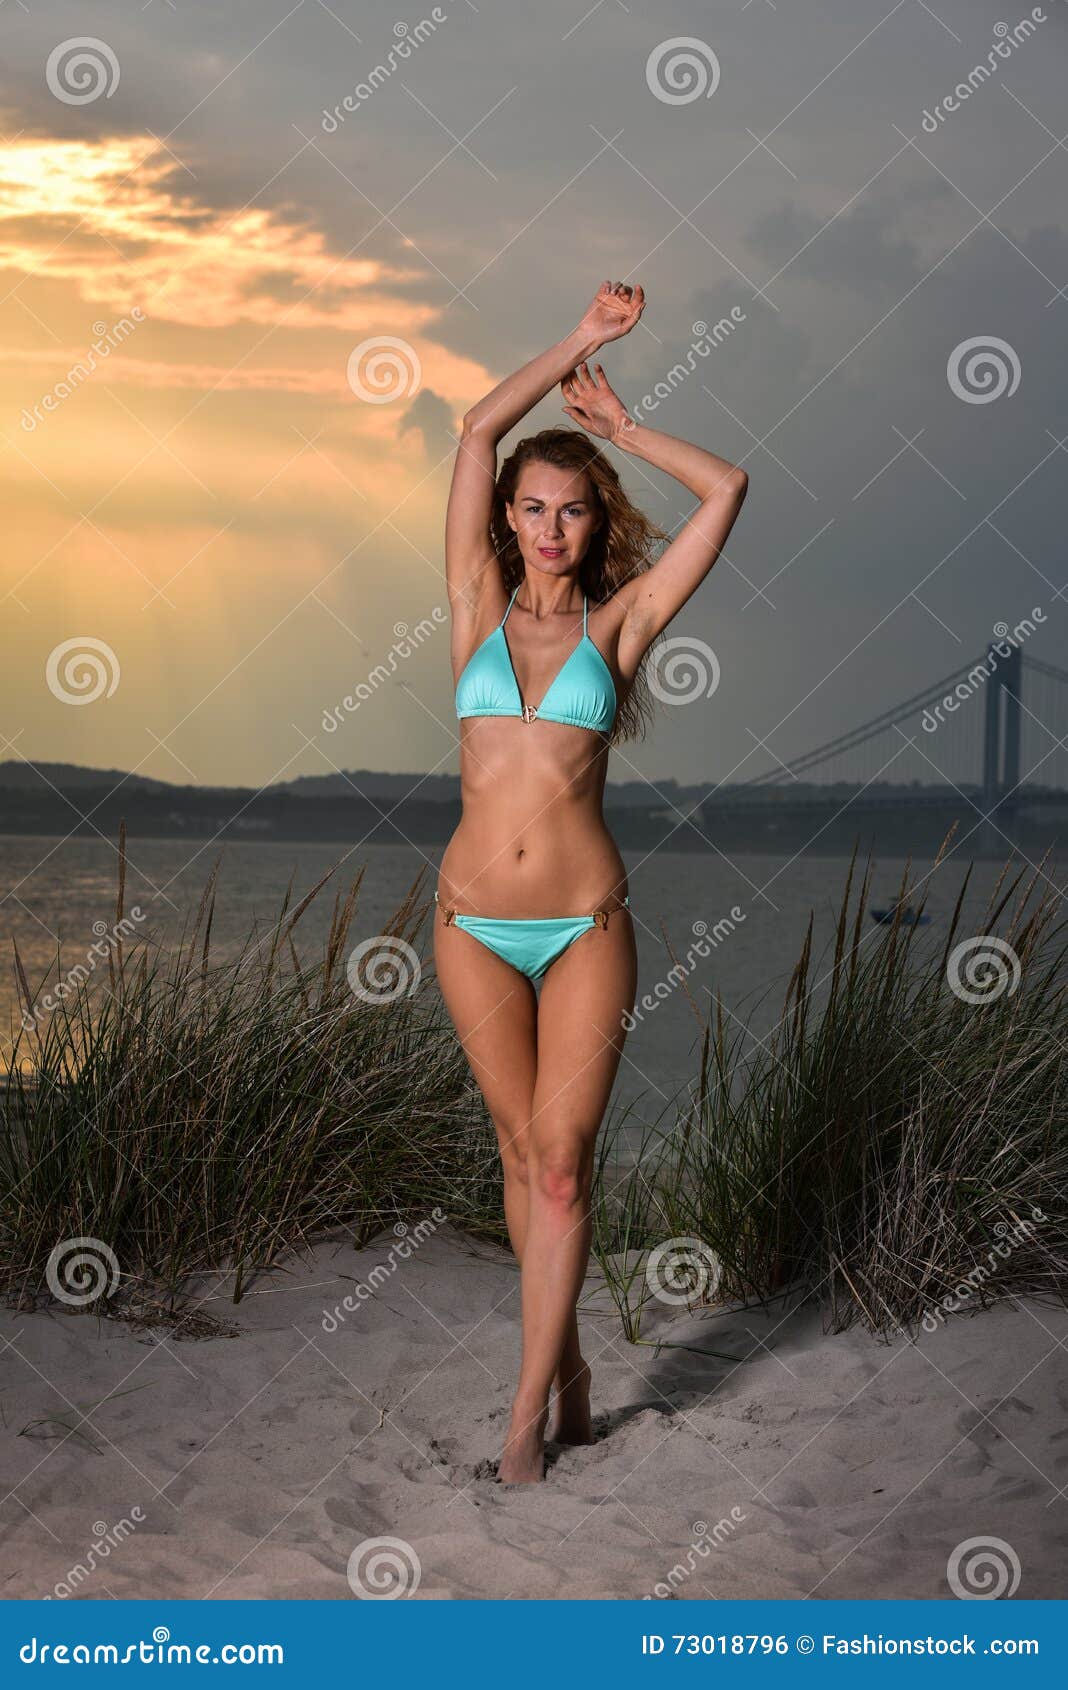 Beautiful Young Woman with Perfect Slim Body in Bikini Posing on